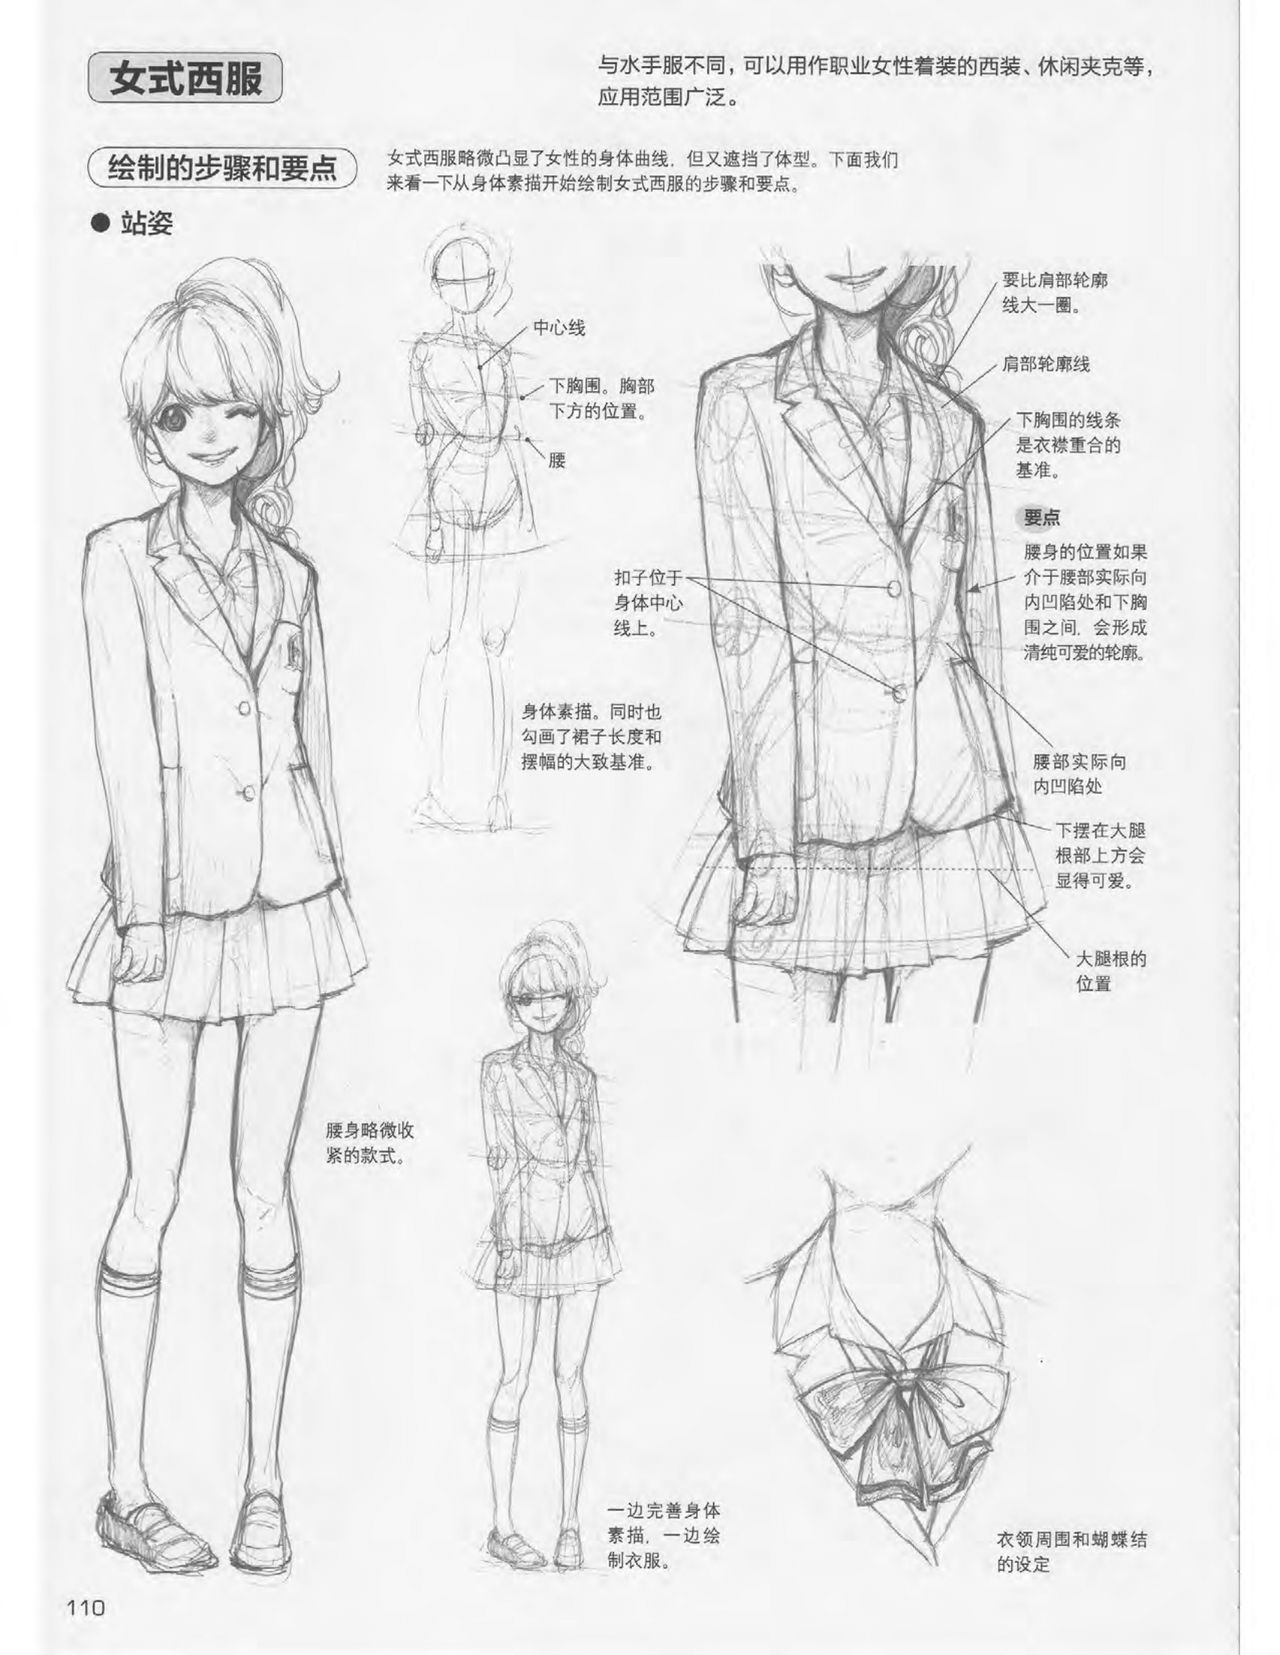 Japanese Manga Master Lecture 3: Lin Akira and Kakumaru Maru Talk About Glamorous Character Modeling 110